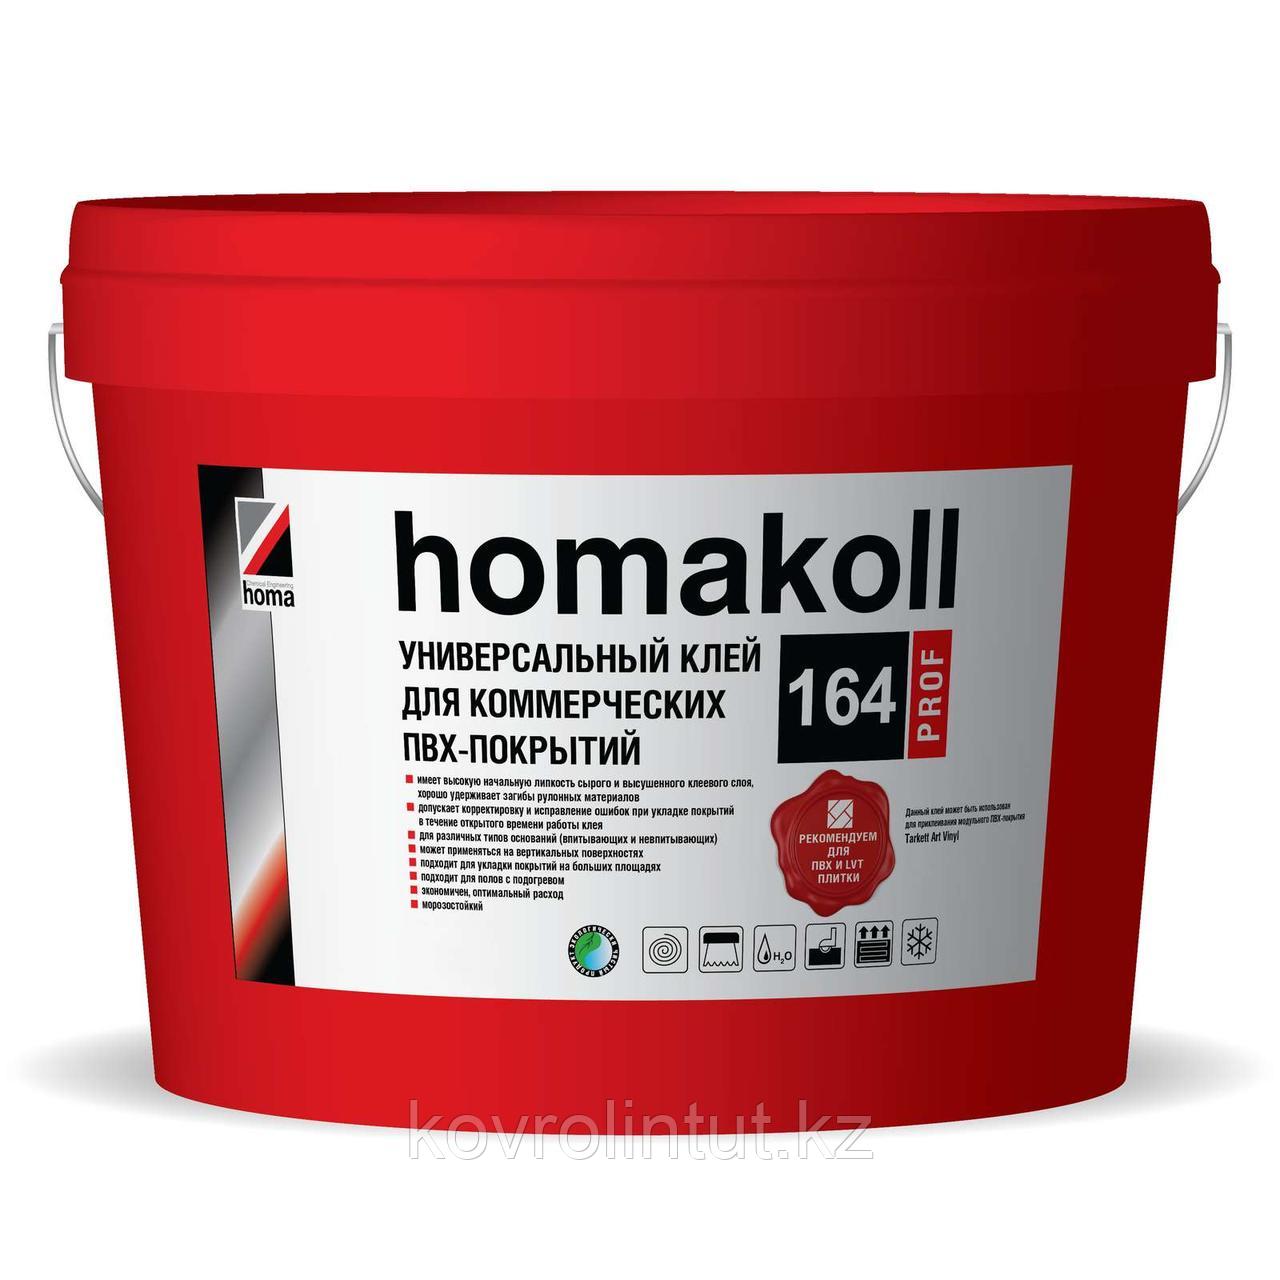 Клей Homakoll 164 Prof для коммерческих гибких покрытий, 5 кг